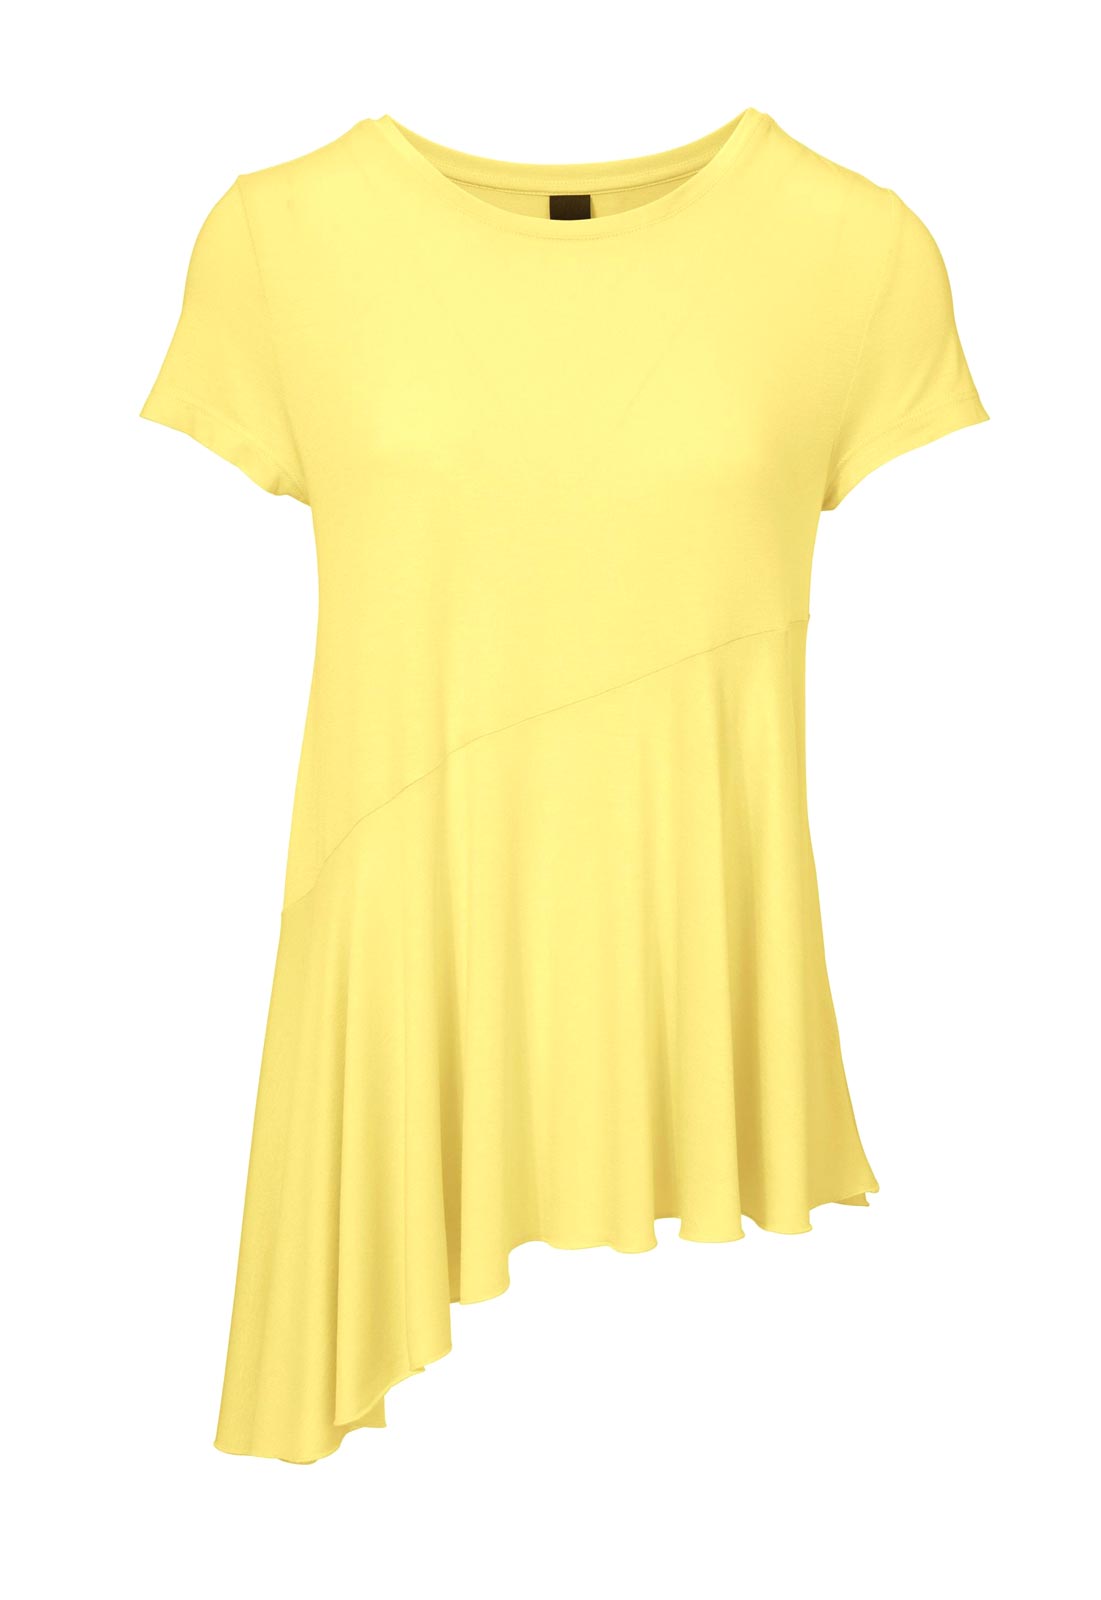 HEINE - BEST CONNECTIONS Damen Jerseyshirt, gelb